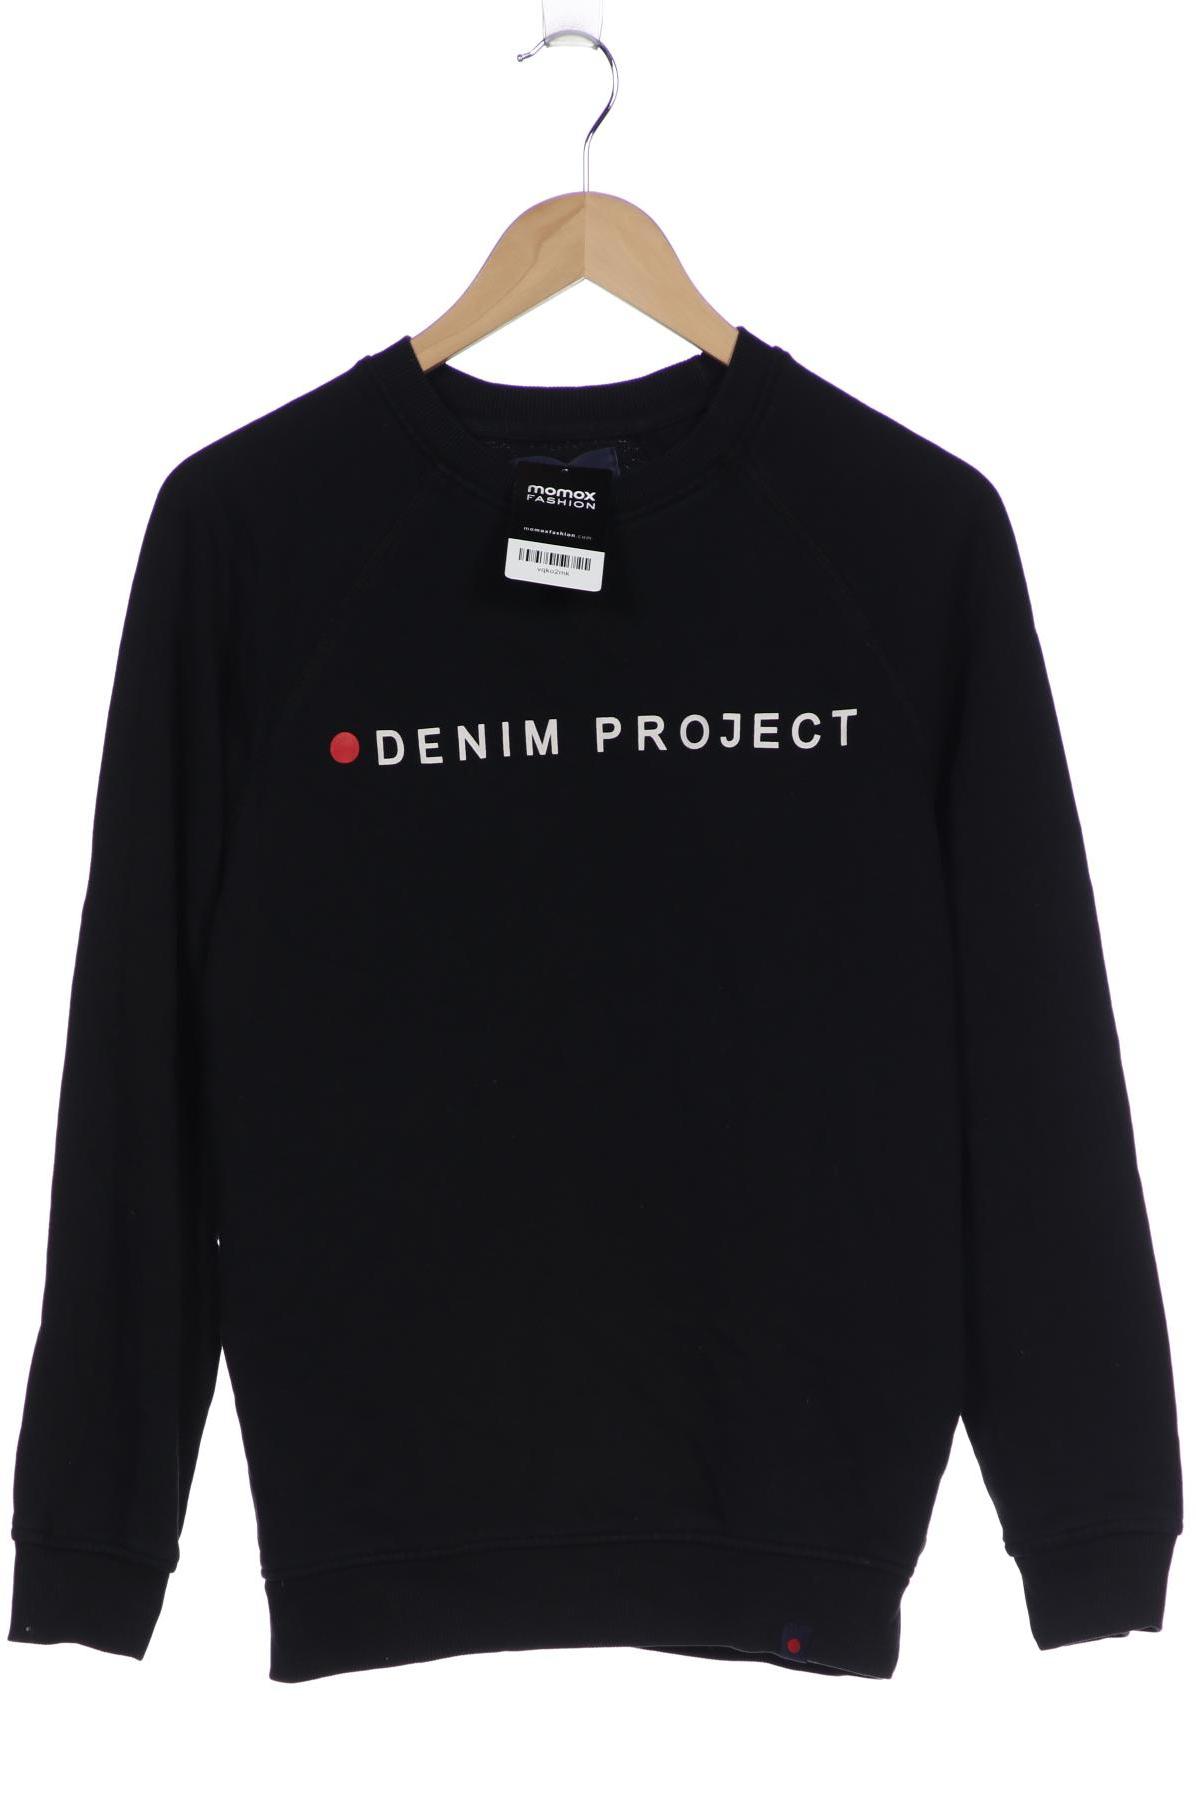 Denim Project Herren Sweatshirt, schwarz von Denim Project